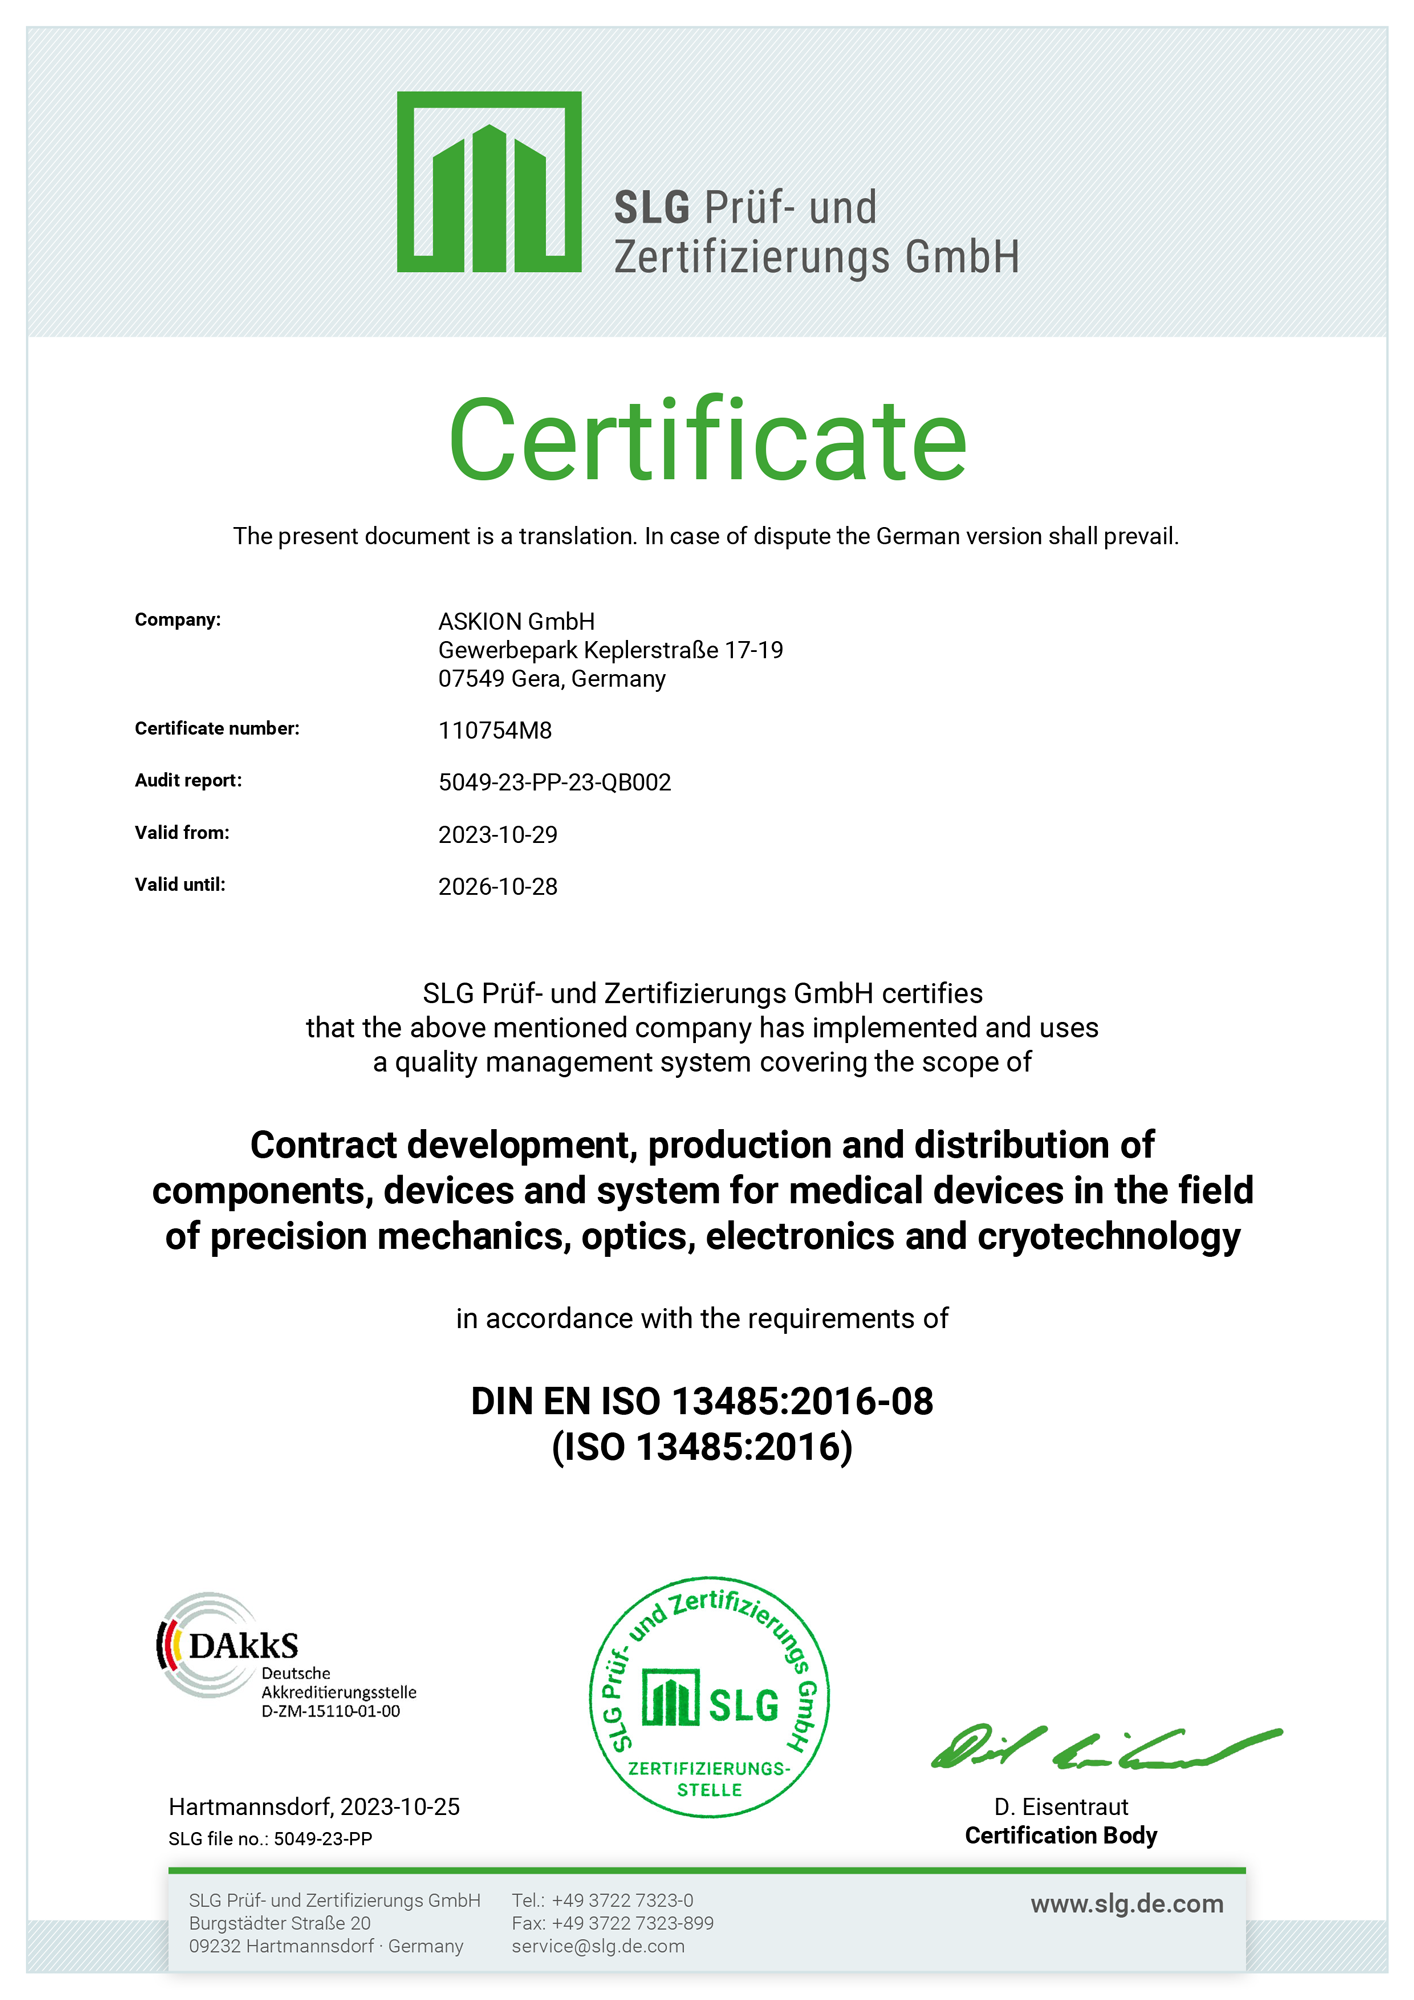 Download Certificate - DIN EN ISO 13485